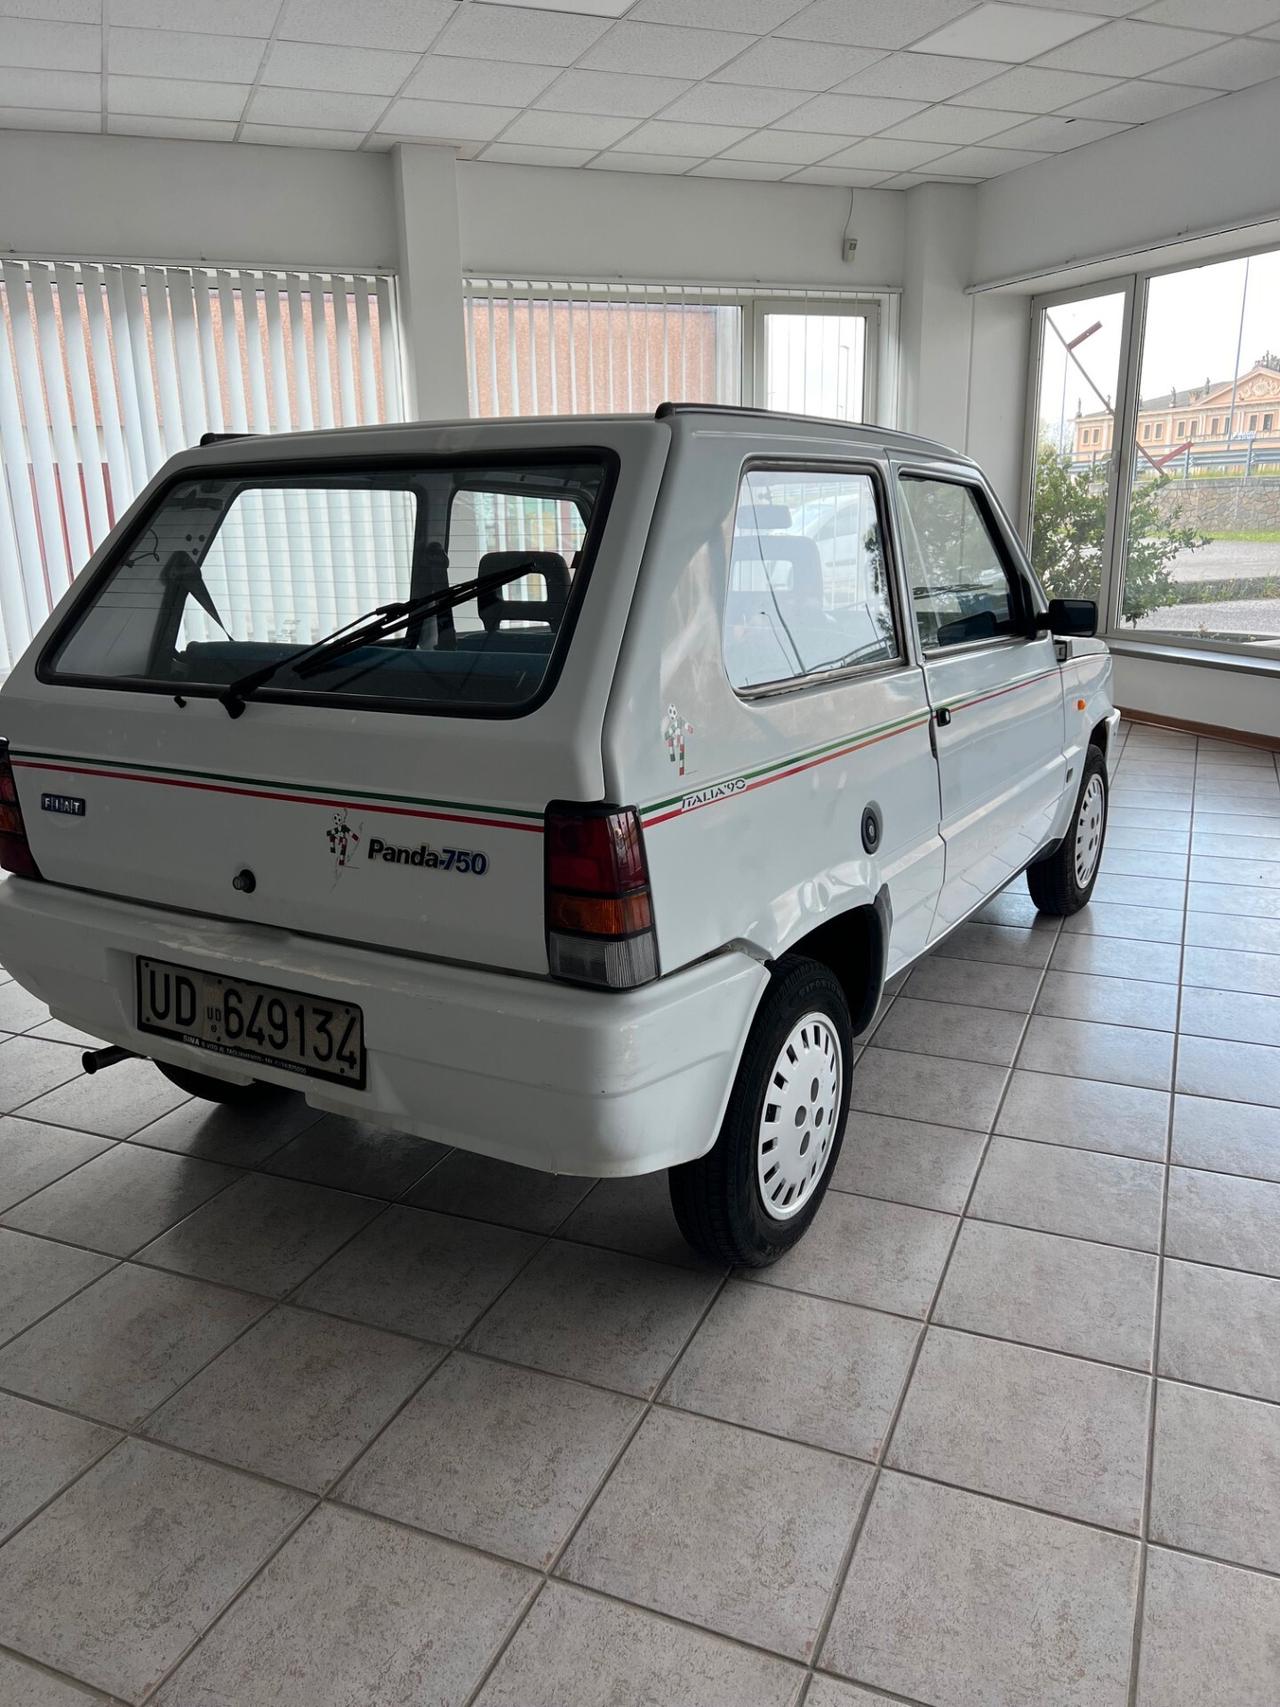 Fiat Panda 750 Italia '90